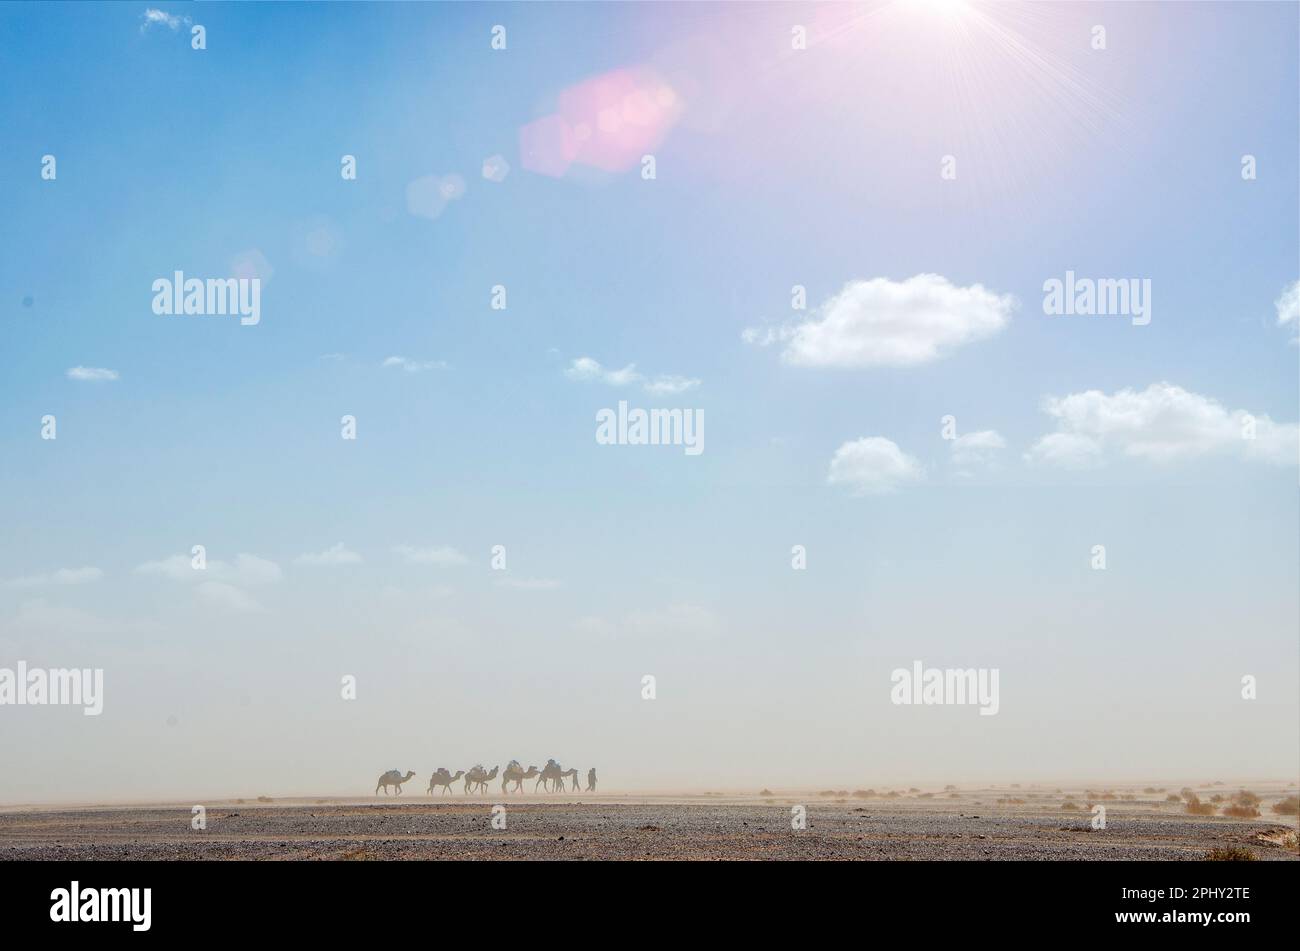 Tempête de sable dans le désert du Sahara, au Maroc, en arrière-plan silhouette des dromadaires de la population bédouine, berbères nomades en mouvement. Merzouga Banque D'Images